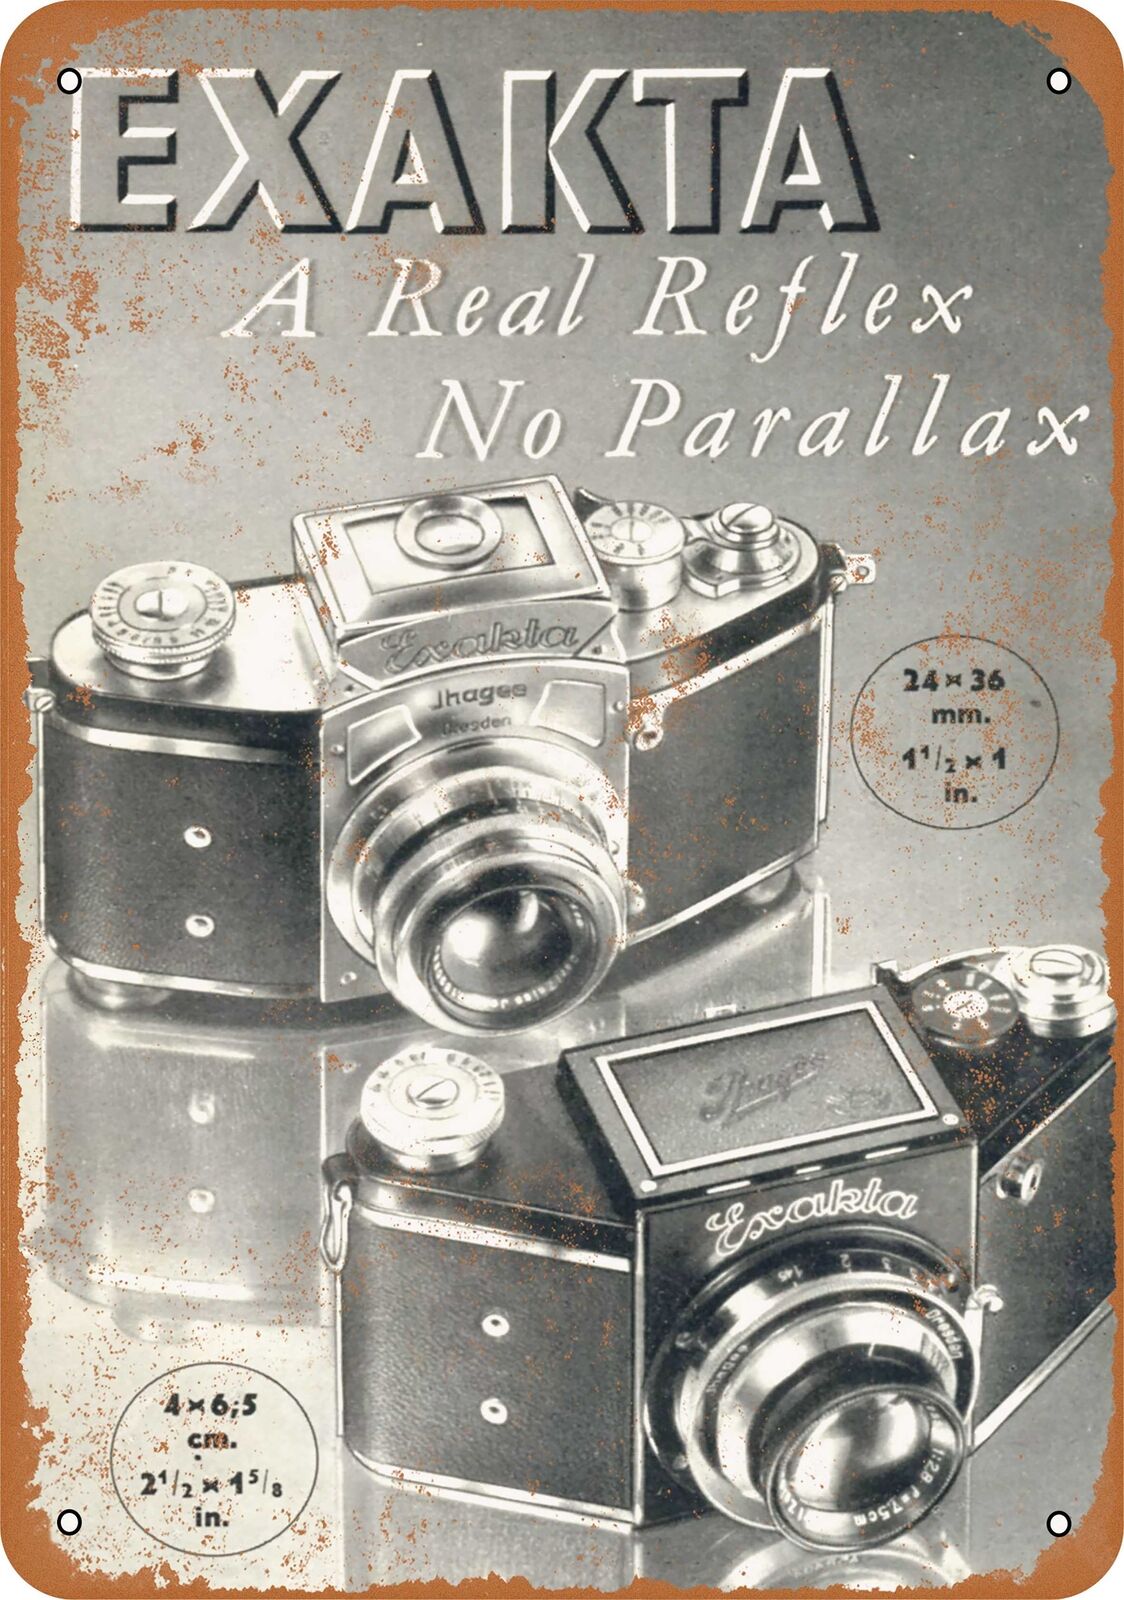 Metal Sign - 1937 Exakta Reflex Cameras -- Vintage Look